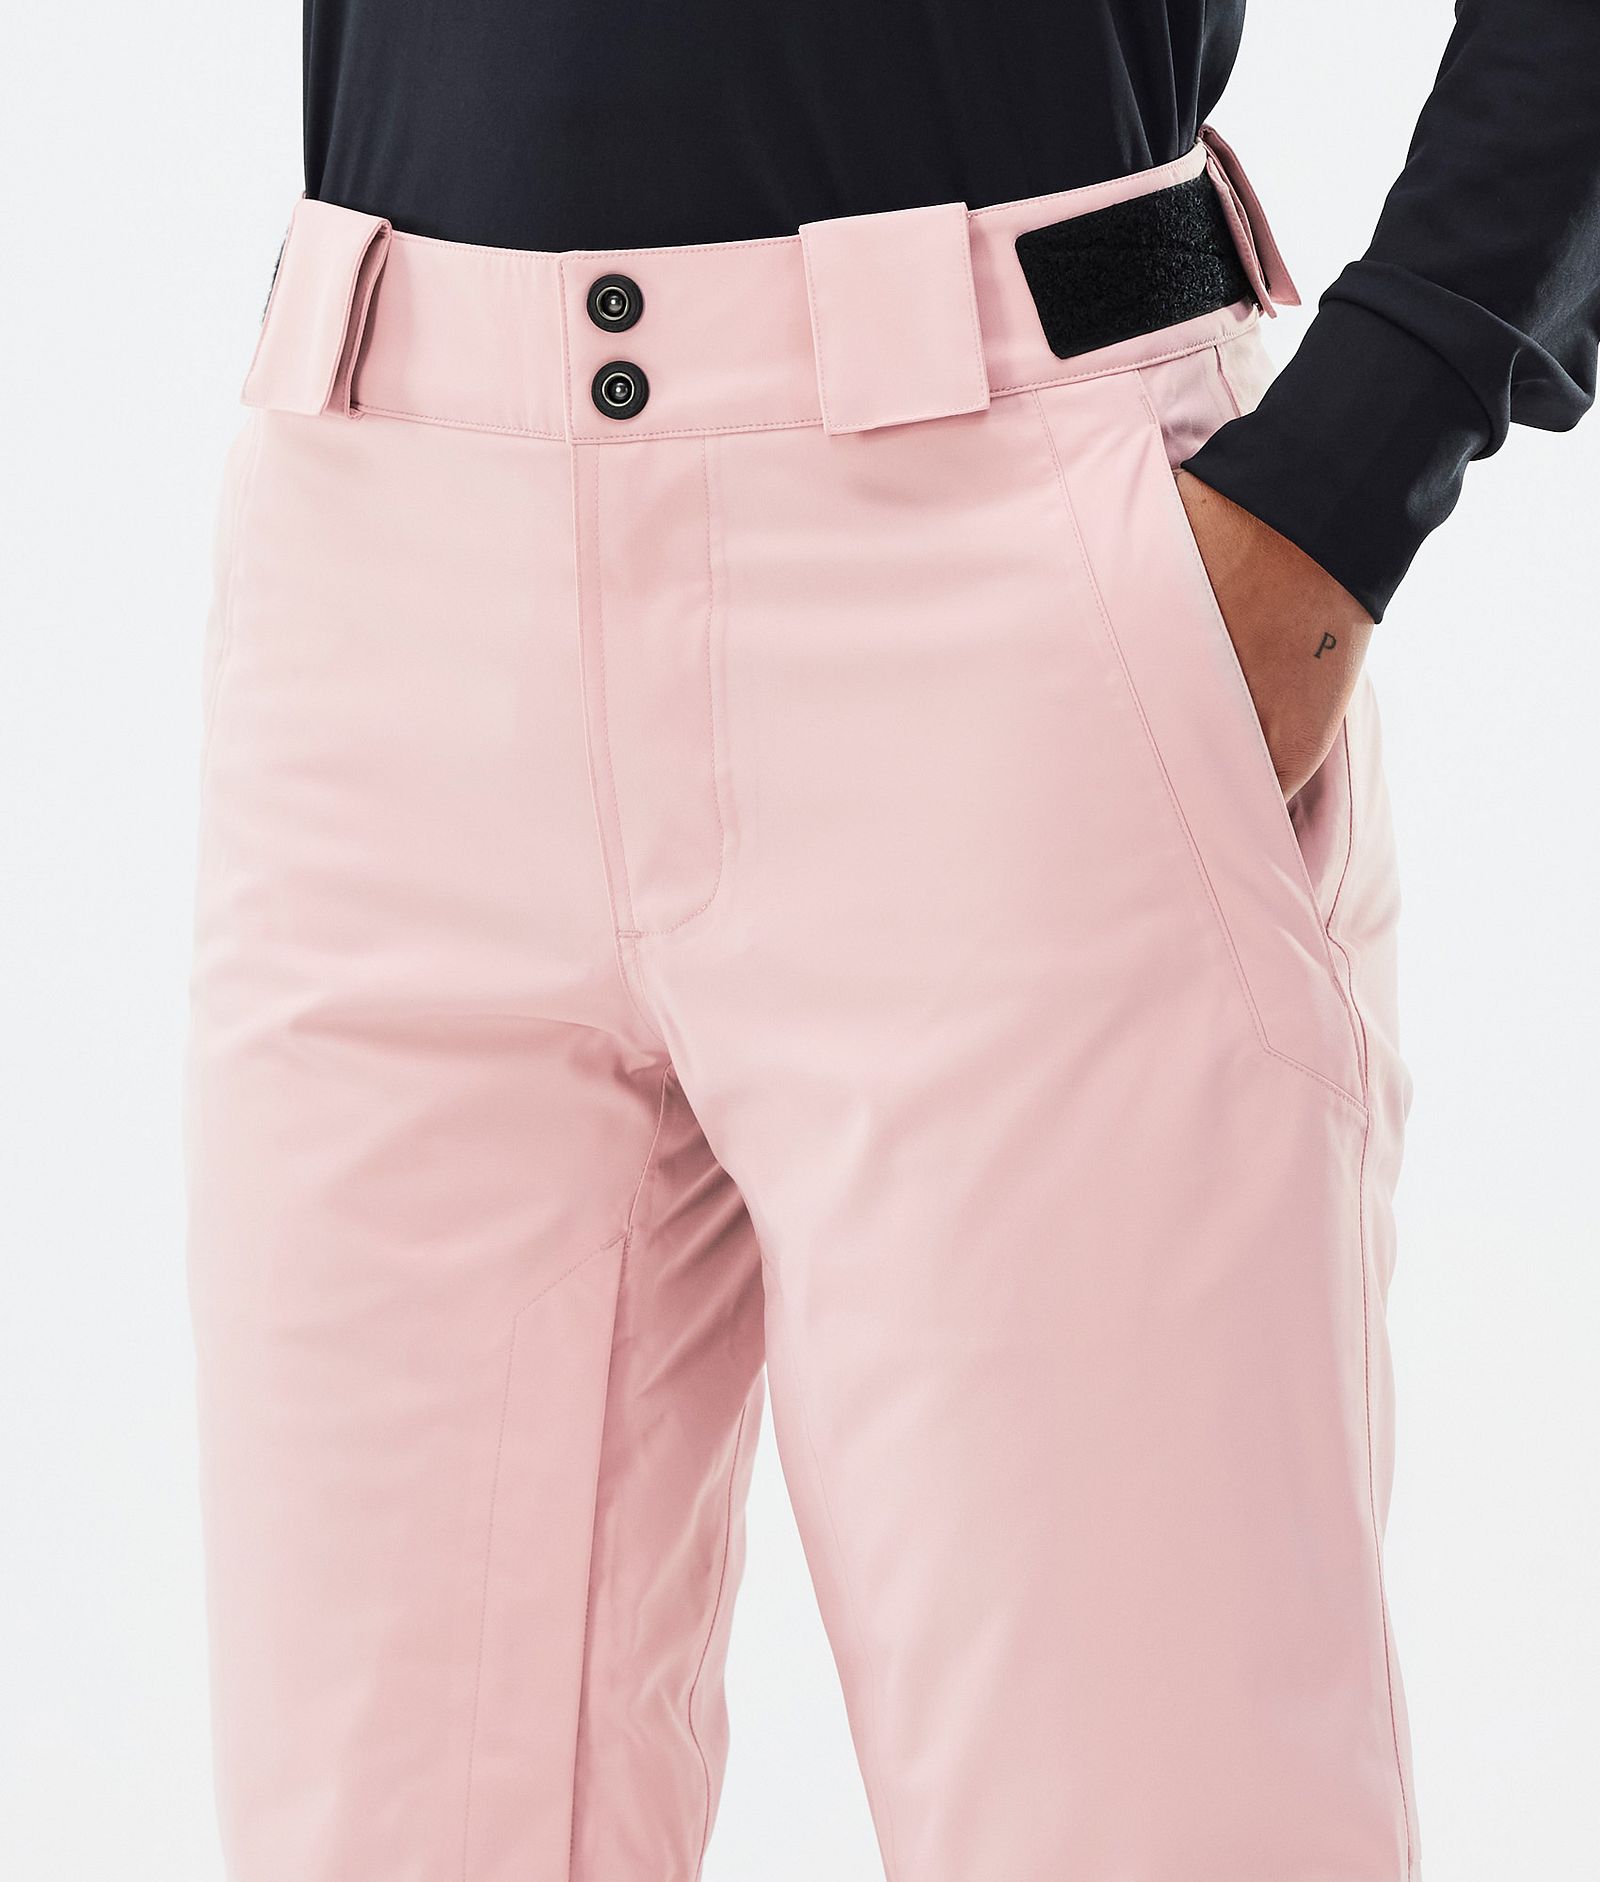 Dope Con W Spodnie Narciarskie Kobiety Soft Pink, Zdjęcie 5 z 6